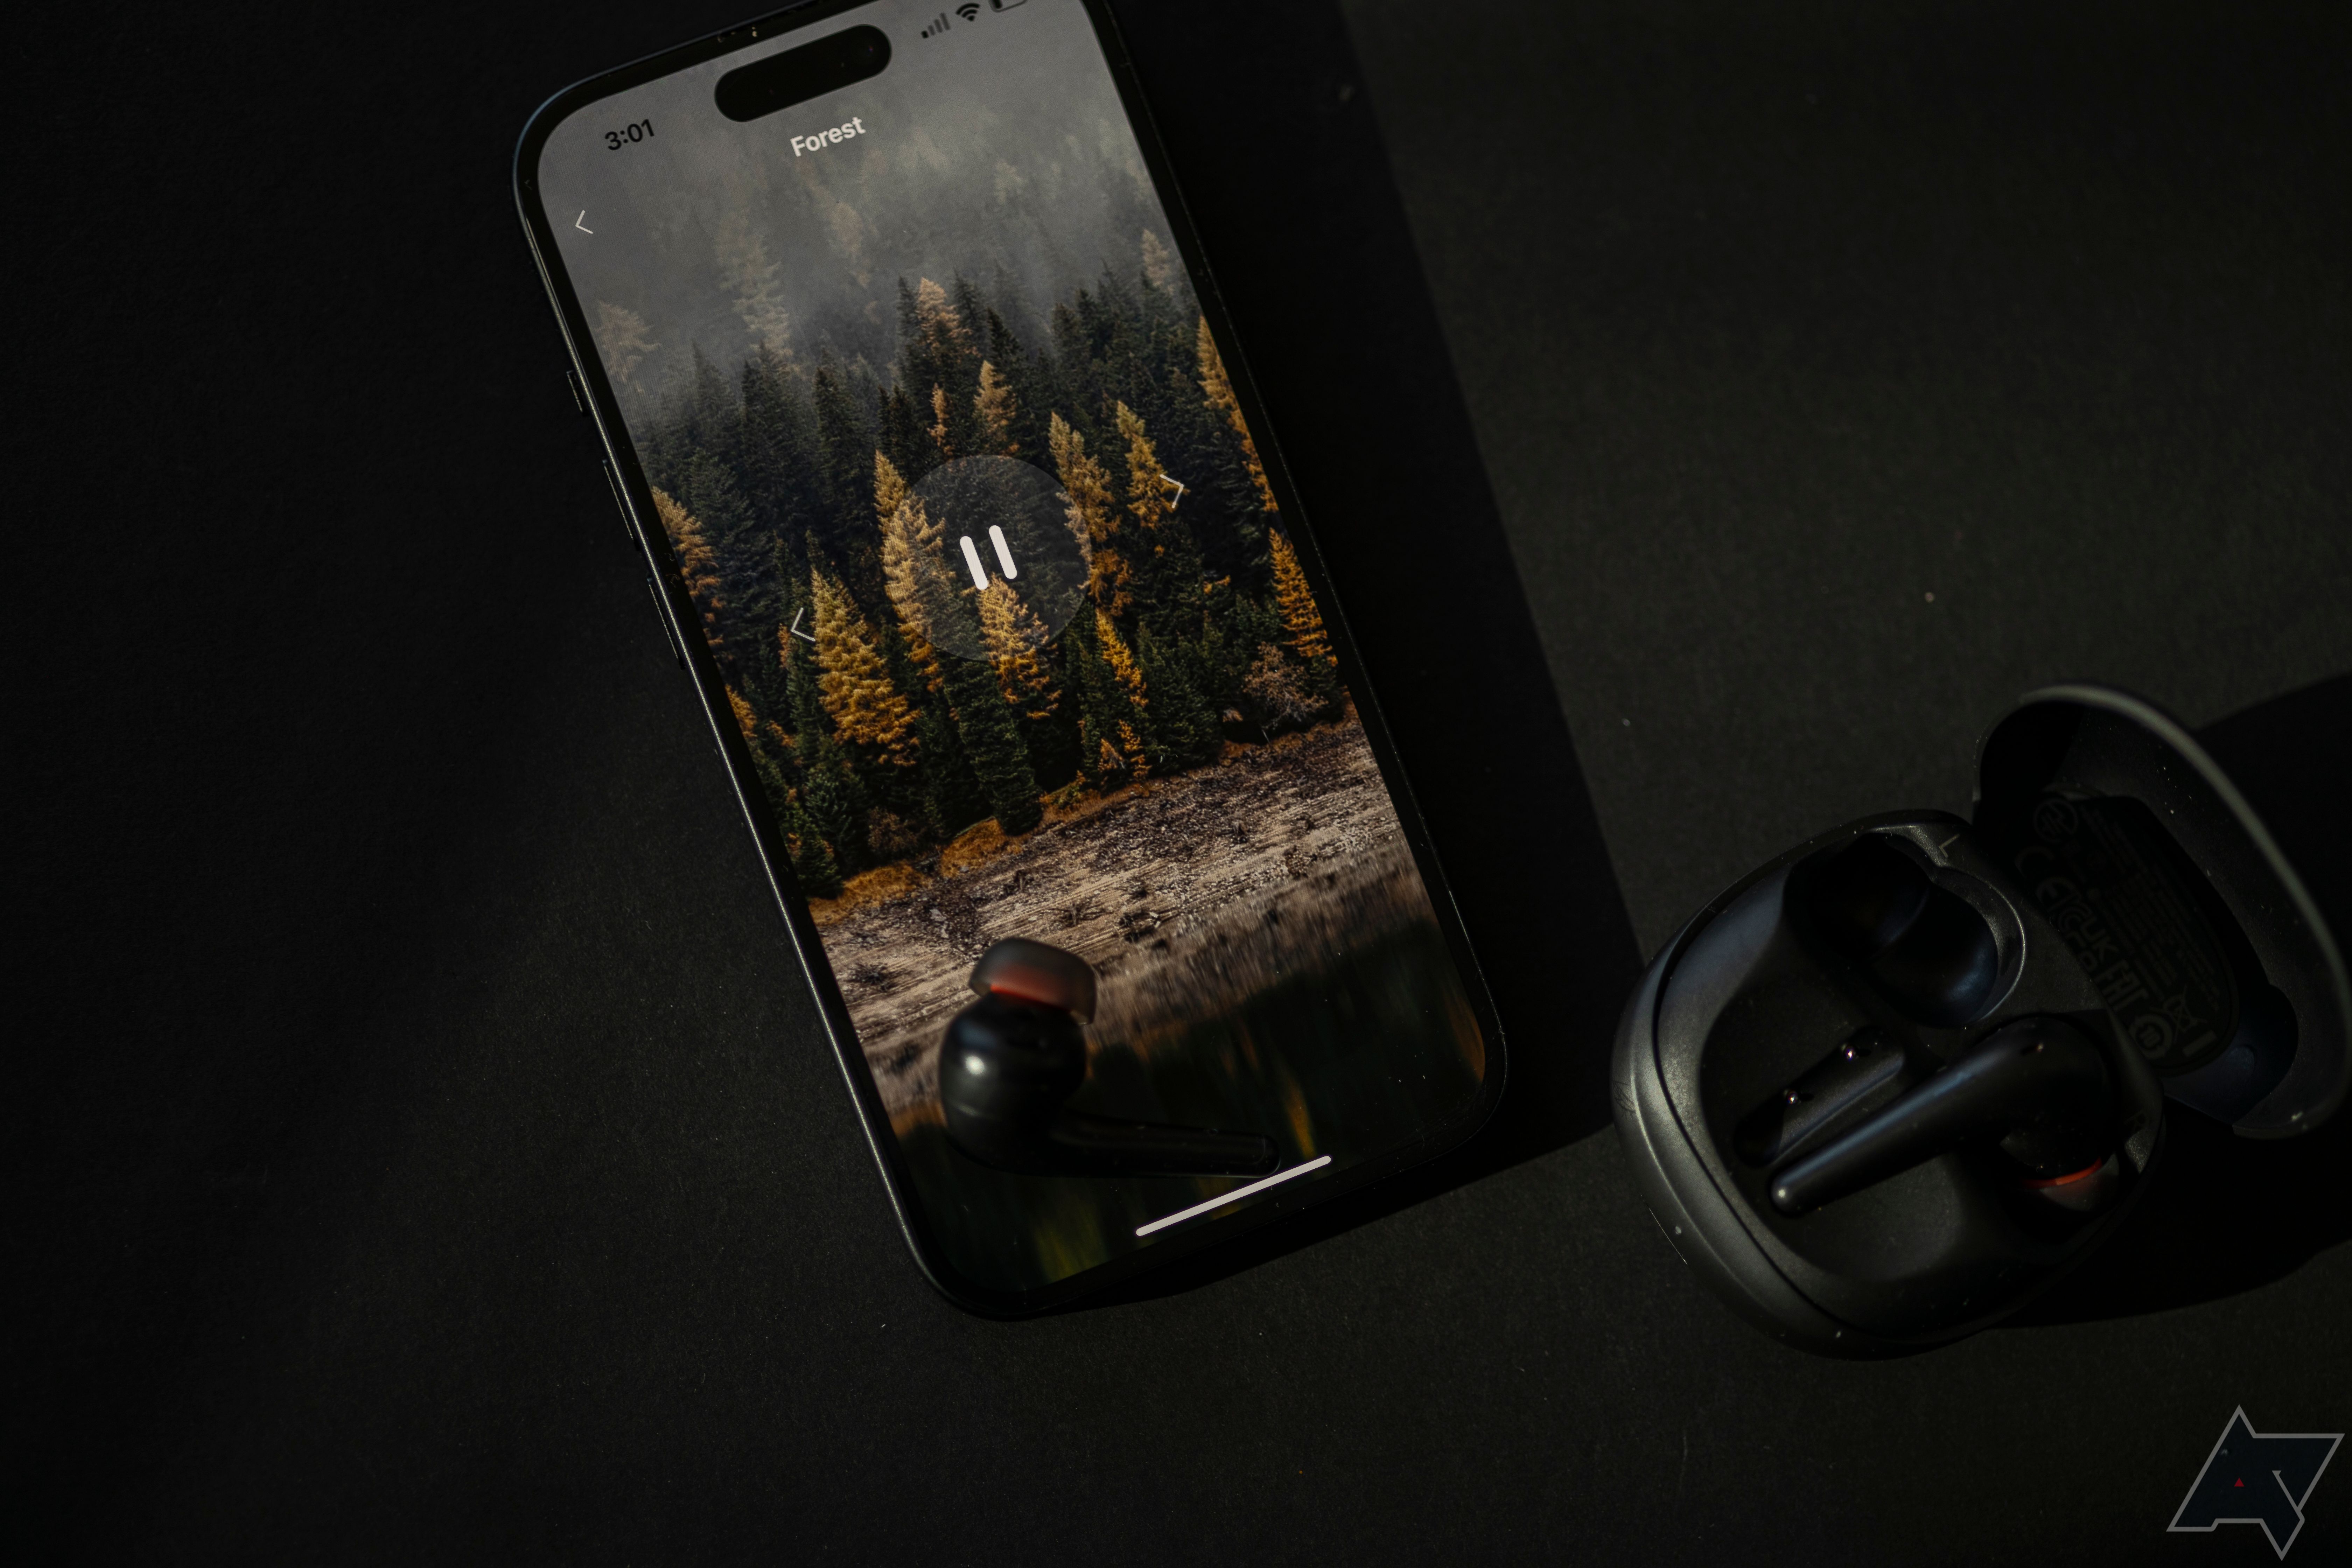 1Mais fone de ouvido Aero colocado no iPhone, aberto para a paisagem sonora da floresta, com capa de fone de ouvido aberta por perto